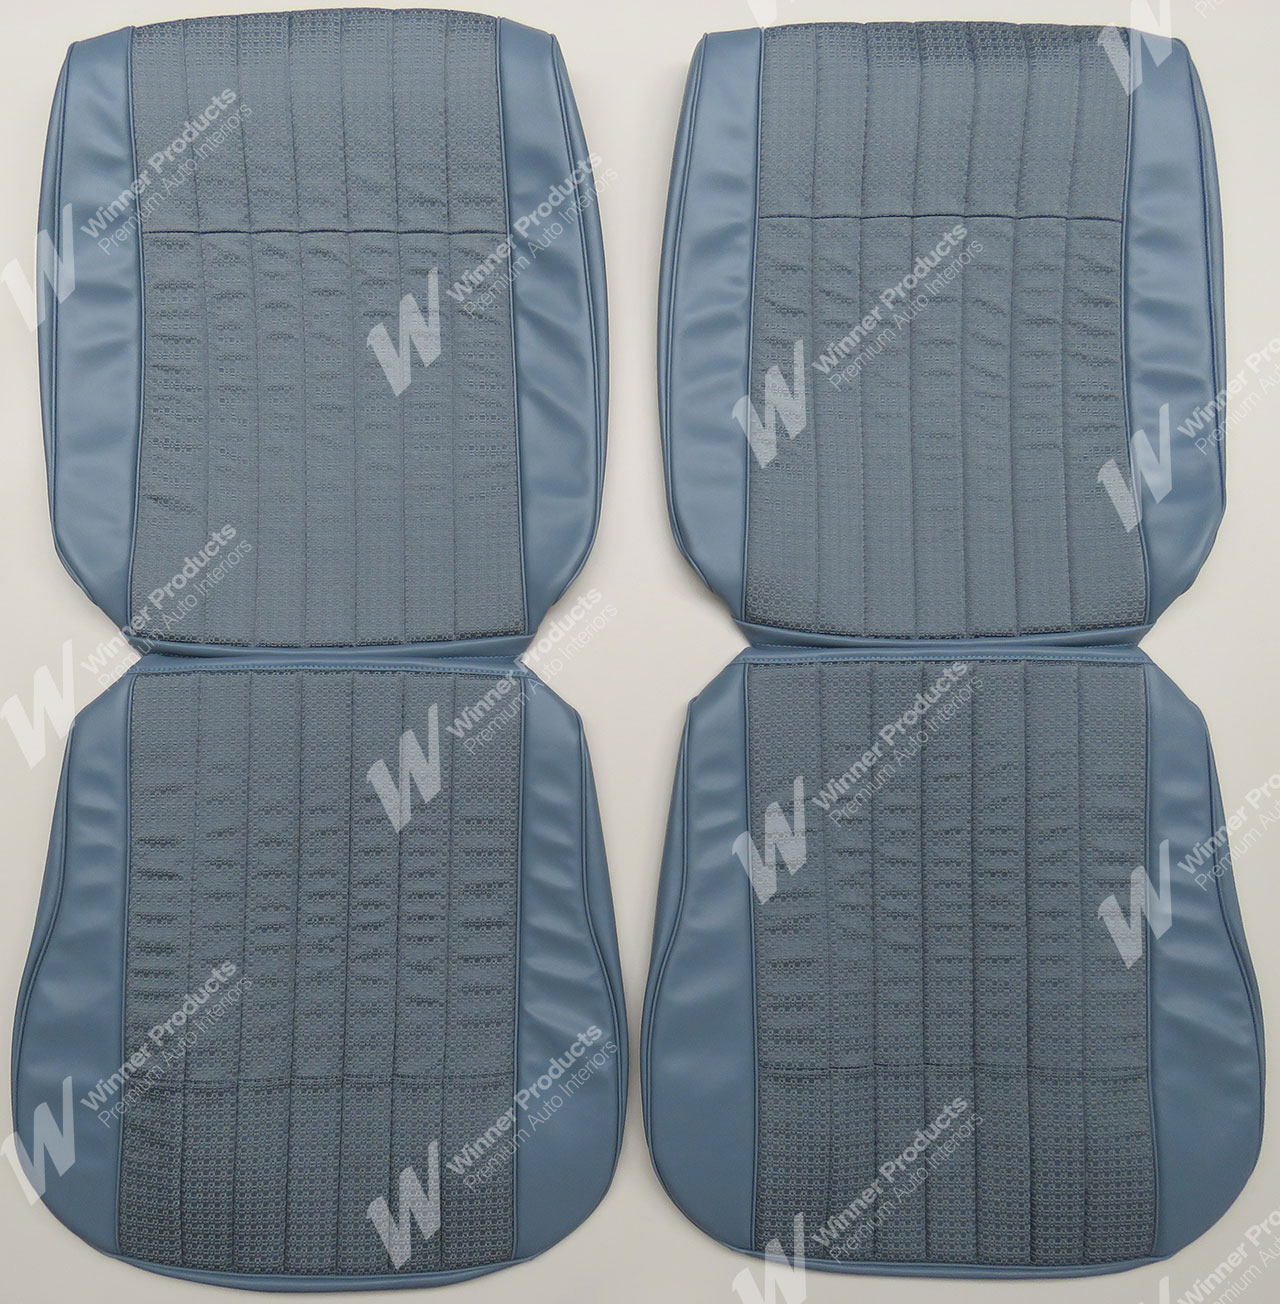 Holden Premier HK Premier Sedan 14S Light Teal & Castillion Weave Seat Covers (Image 1 of 4)